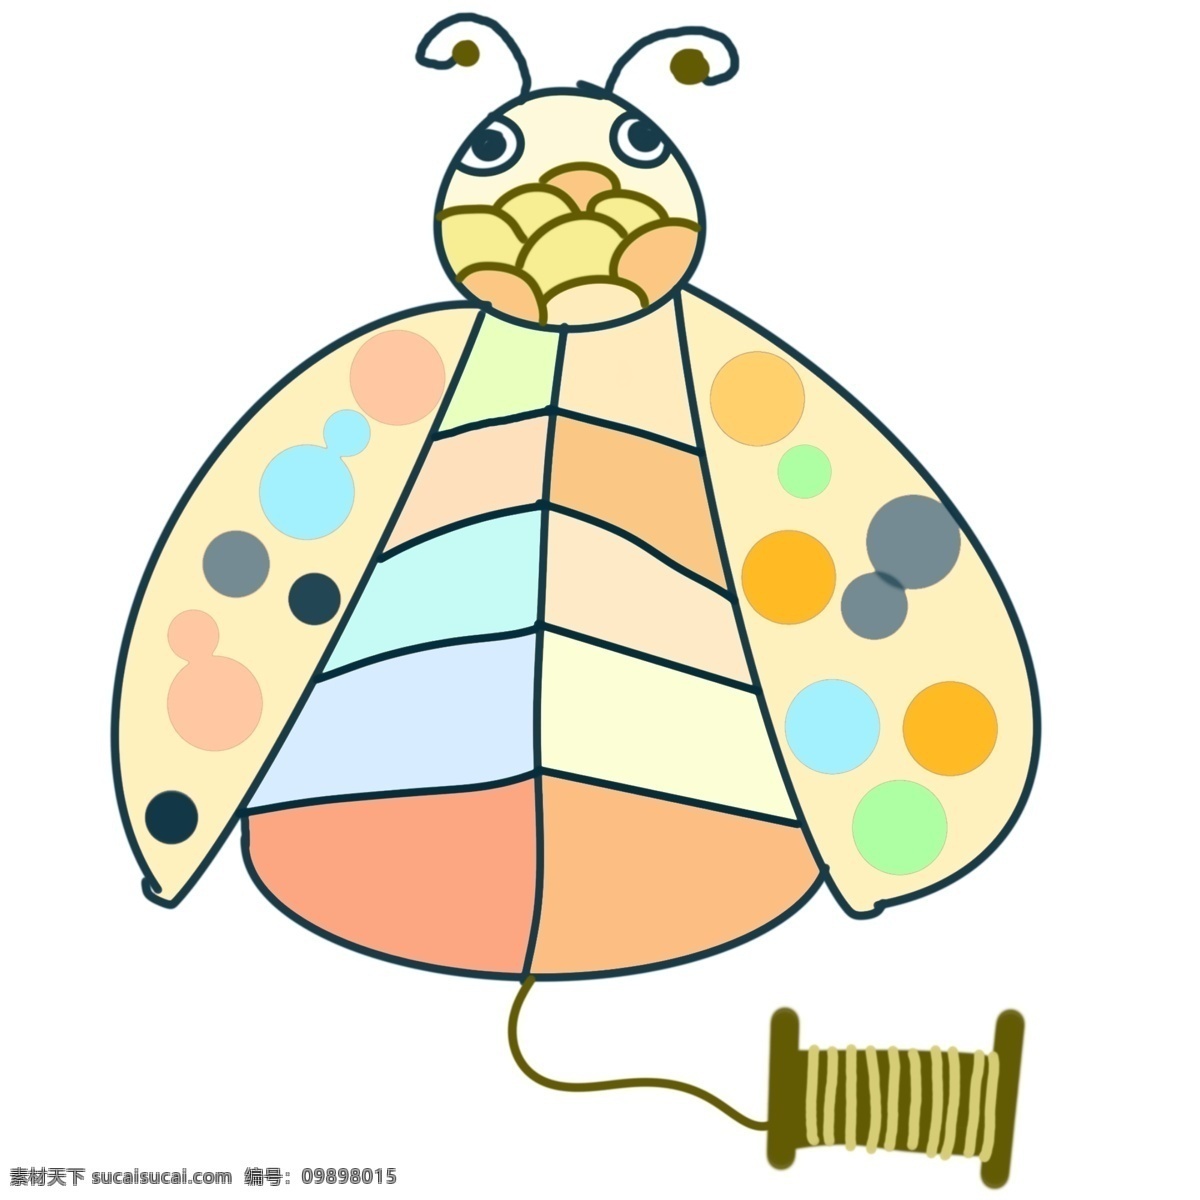 蜜蜂 风筝 装饰 插画 动物风筝 蜜蜂风筝 漂亮的风筝 创意风筝 立体风筝 精美风筝 卡通风筝 飞舞的风筝